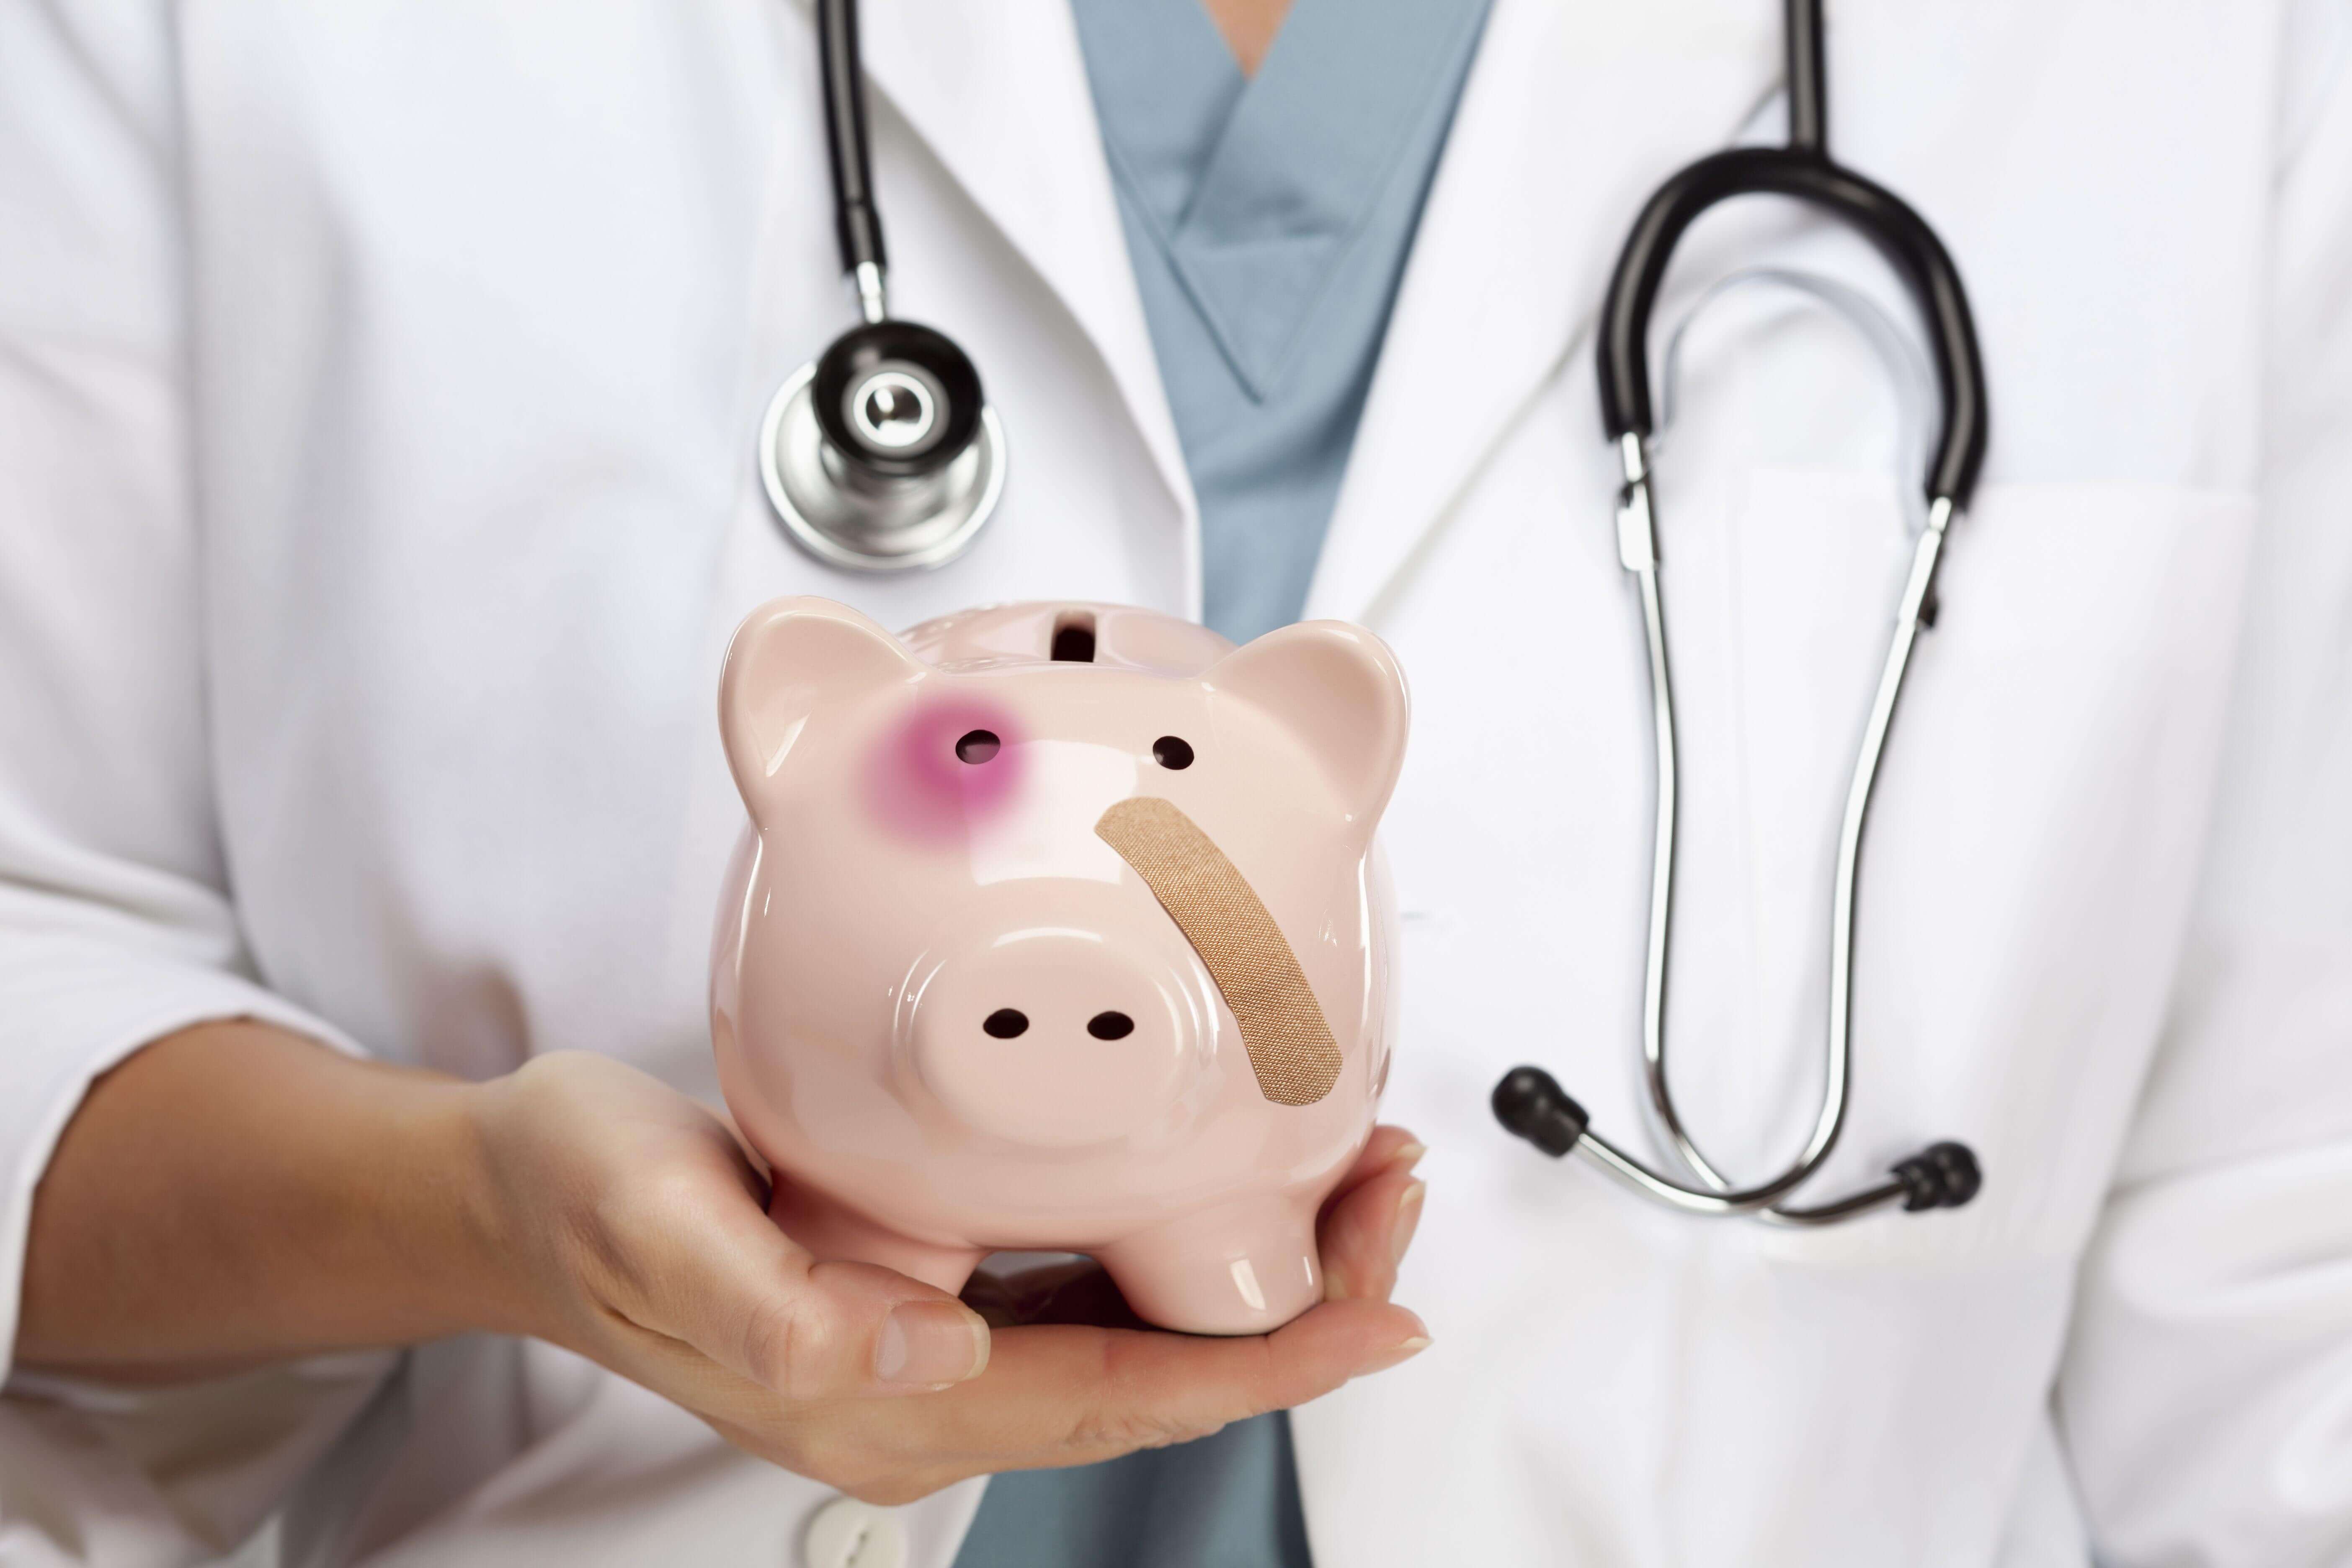 МОЗ пропонує законодавчо закріпити рівень зарплат медиків, прив'язавши їх до прожиткового мінімуму